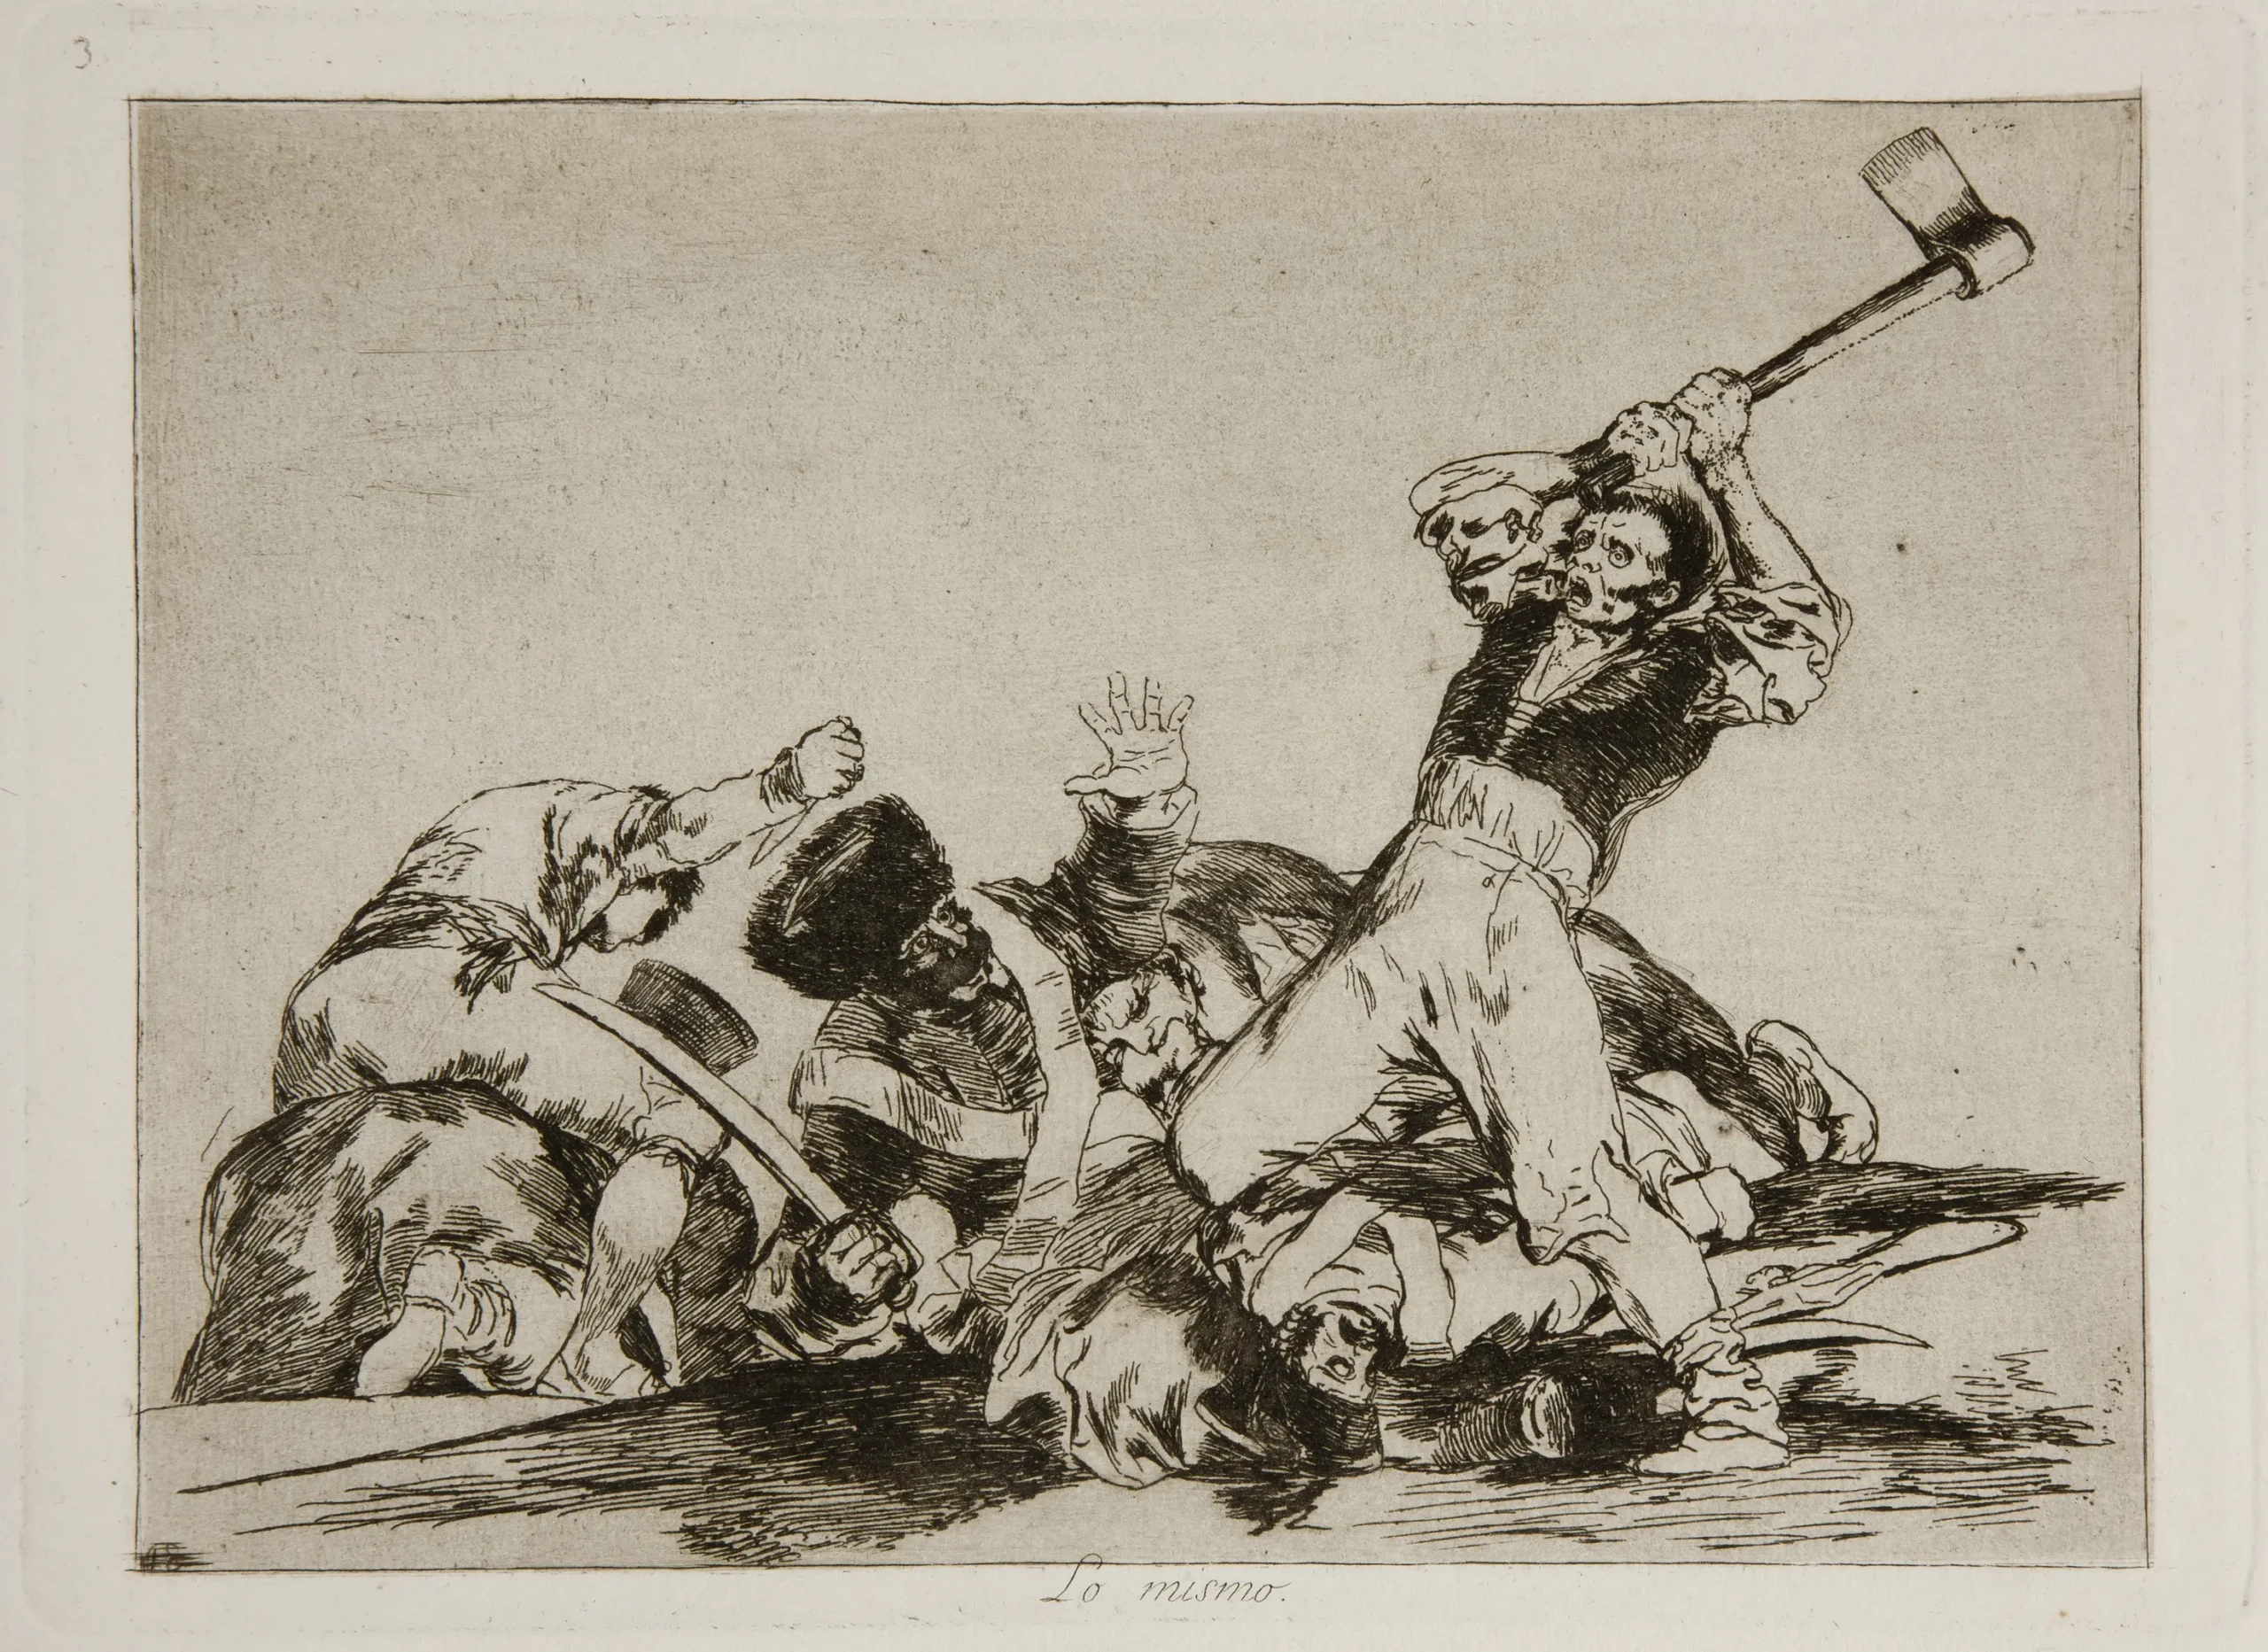 desastres de la guerra goya museo del prado - Dónde están los desastres de la guerra de Goya